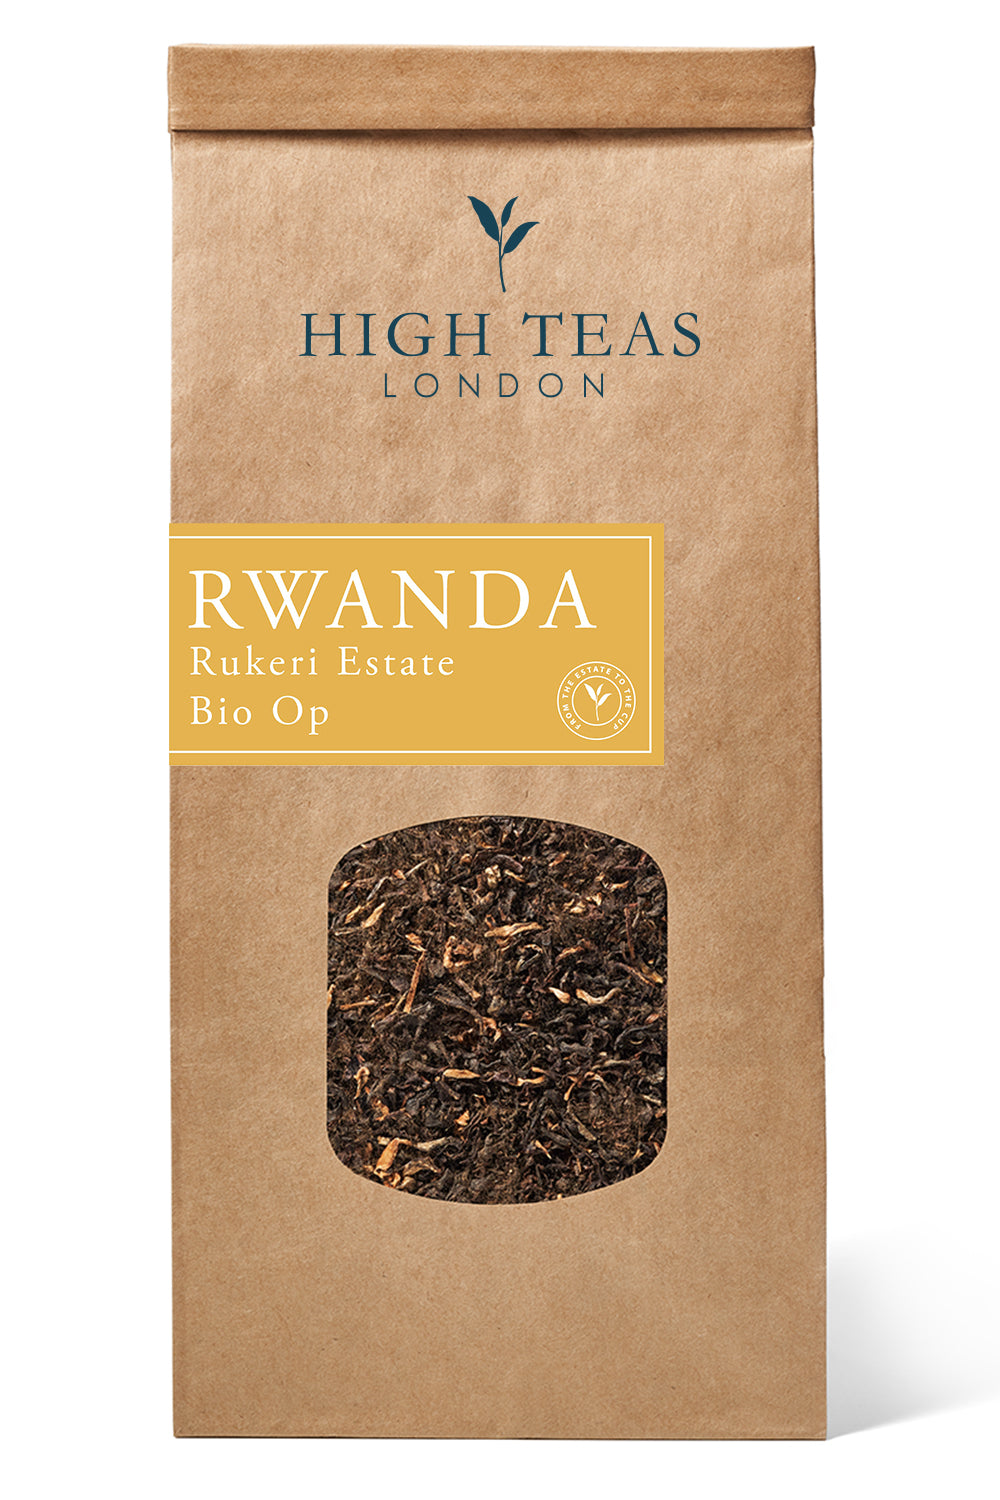 Rwanda - Rukeri Estate Bio Op (Orthodox)-250g-Loose Leaf Tea-High Teas